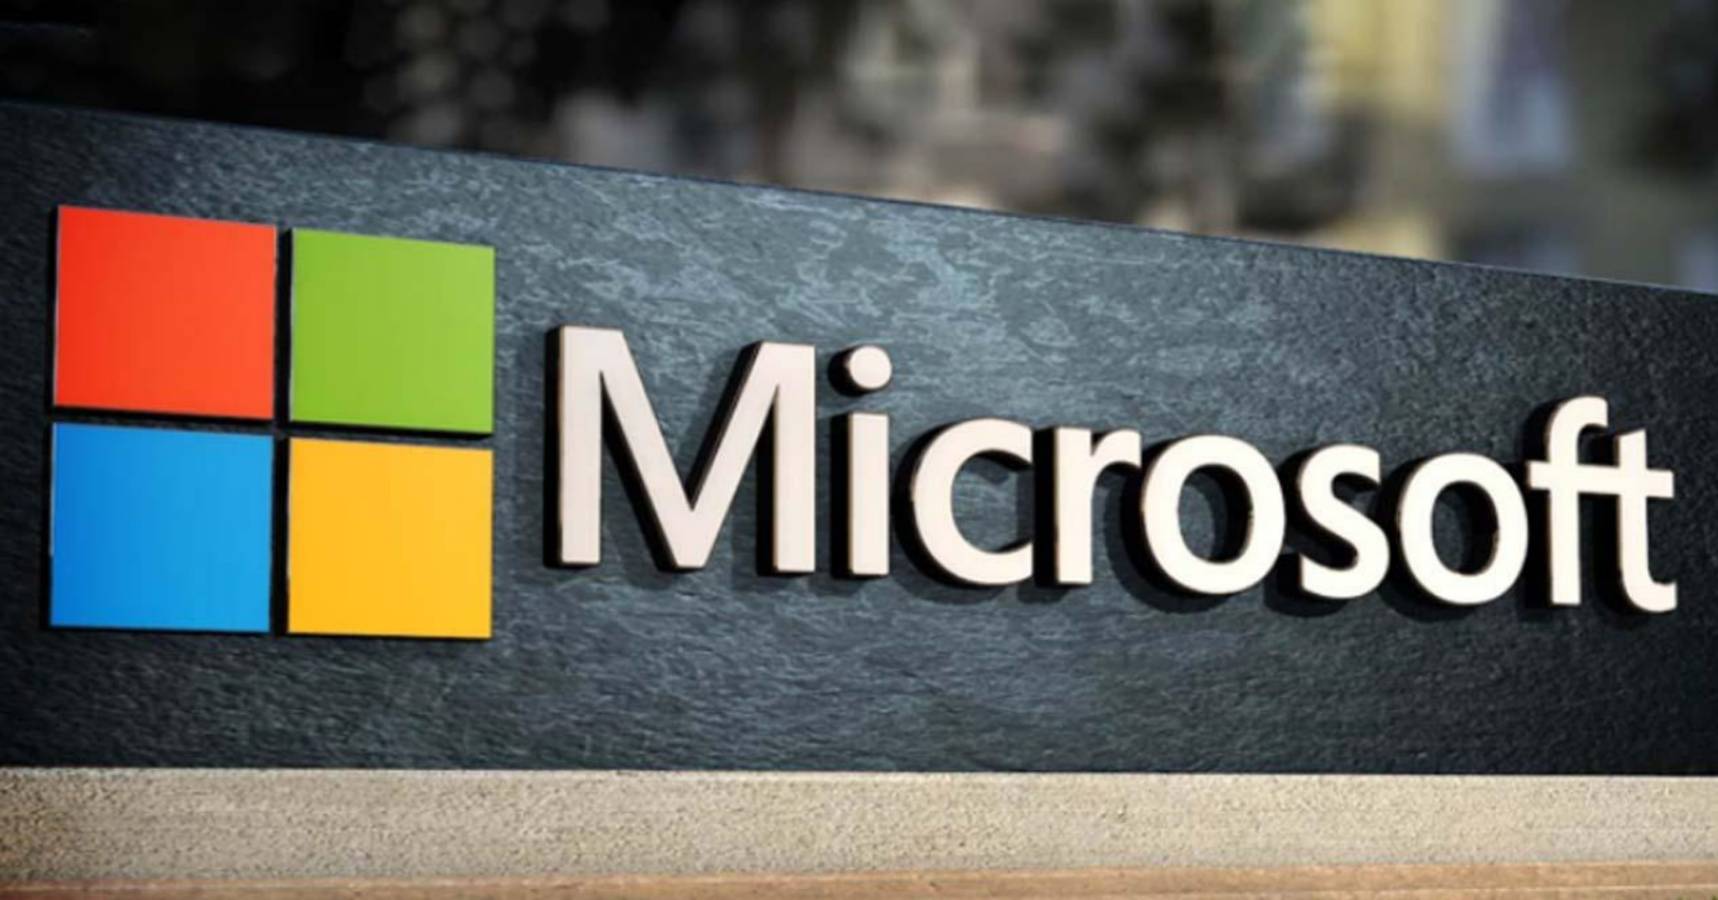 Microsoft tillkännager enormt nytt stöd till det krigshärjade Ukraina